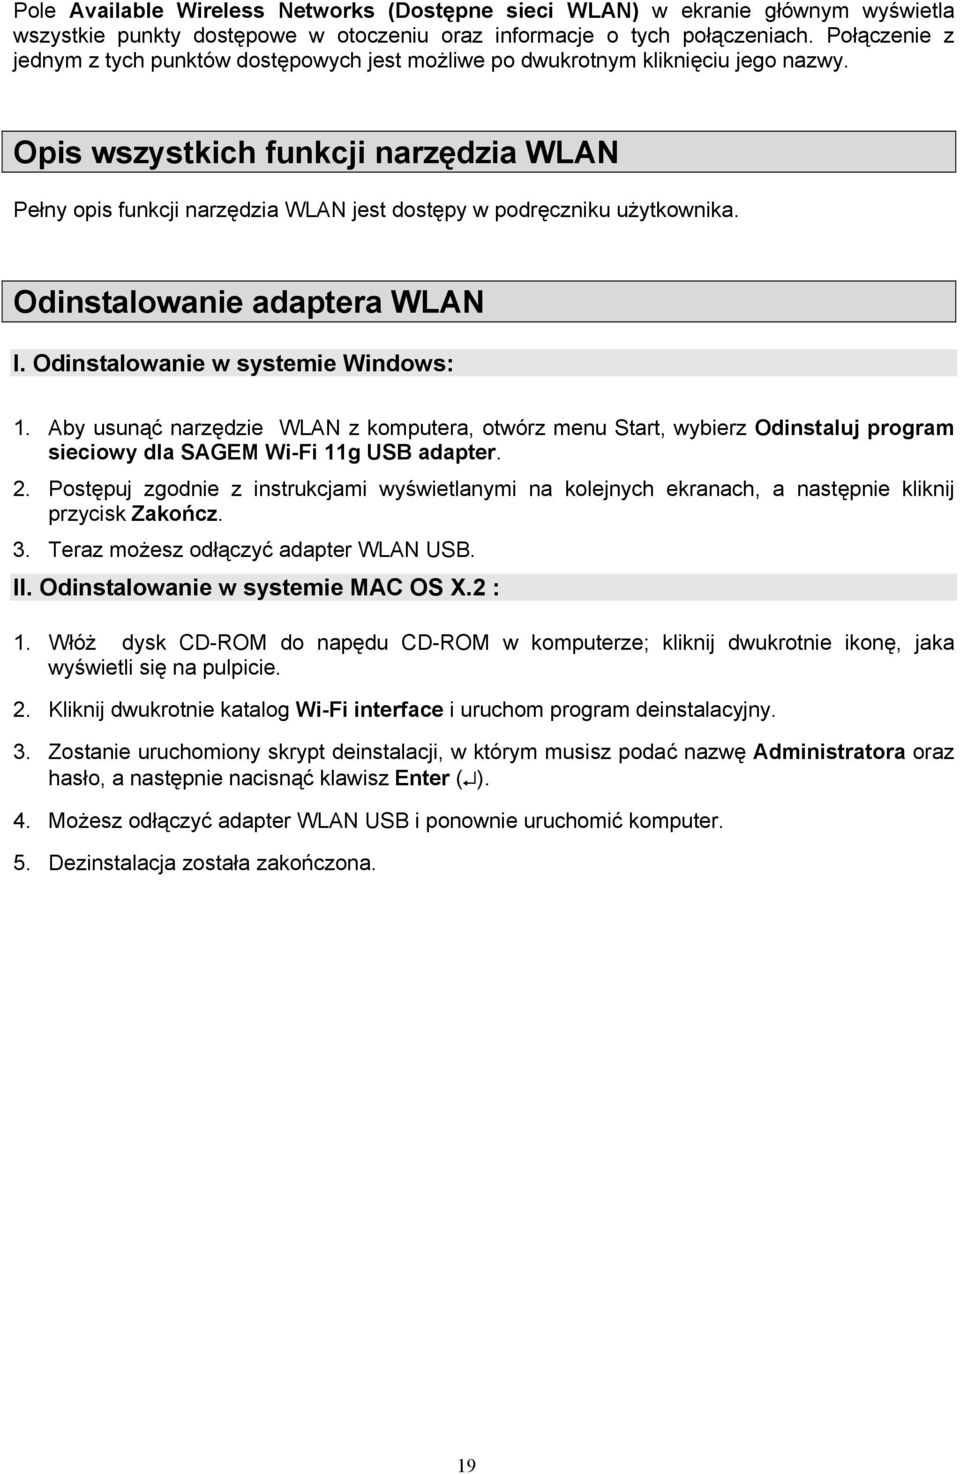 Opis wszystkich funkcji narzędzia WLAN Pełny opis funkcji narzędzia WLAN jest dostępy w podręczniku użytkownika. Odinstalowanie adaptera WLAN I. Odinstalowanie w systemie Windows: 1.